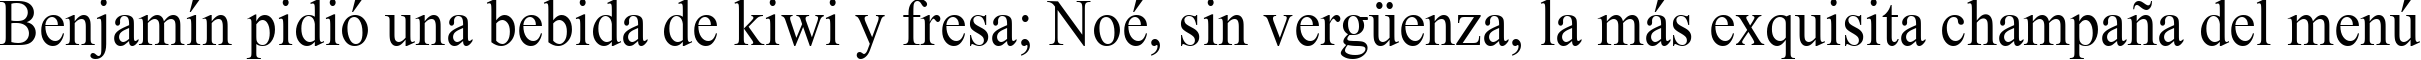 Пример написания шрифтом Times New Roman90n текста на испанском